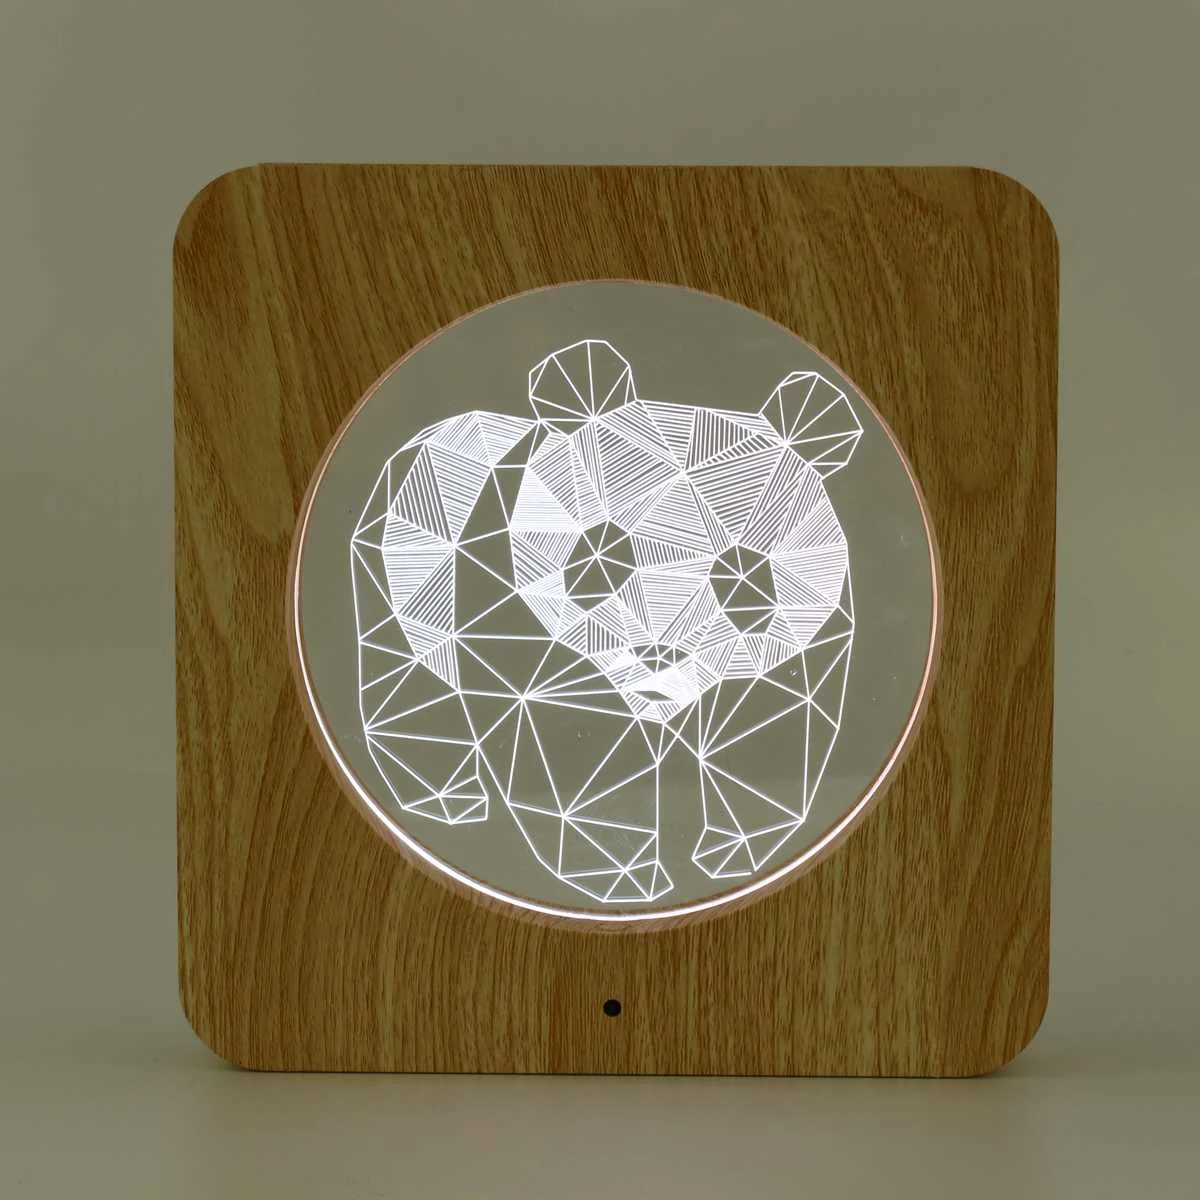 7 цветов деревянная собачья кошка панда животные светодиодный ночной Светильник 3D лампа с питанием от USB Настольный светильник s с пультом дистанционного управления в виде Винни Пуха для детской комнаты - Испускаемый цвет: 1